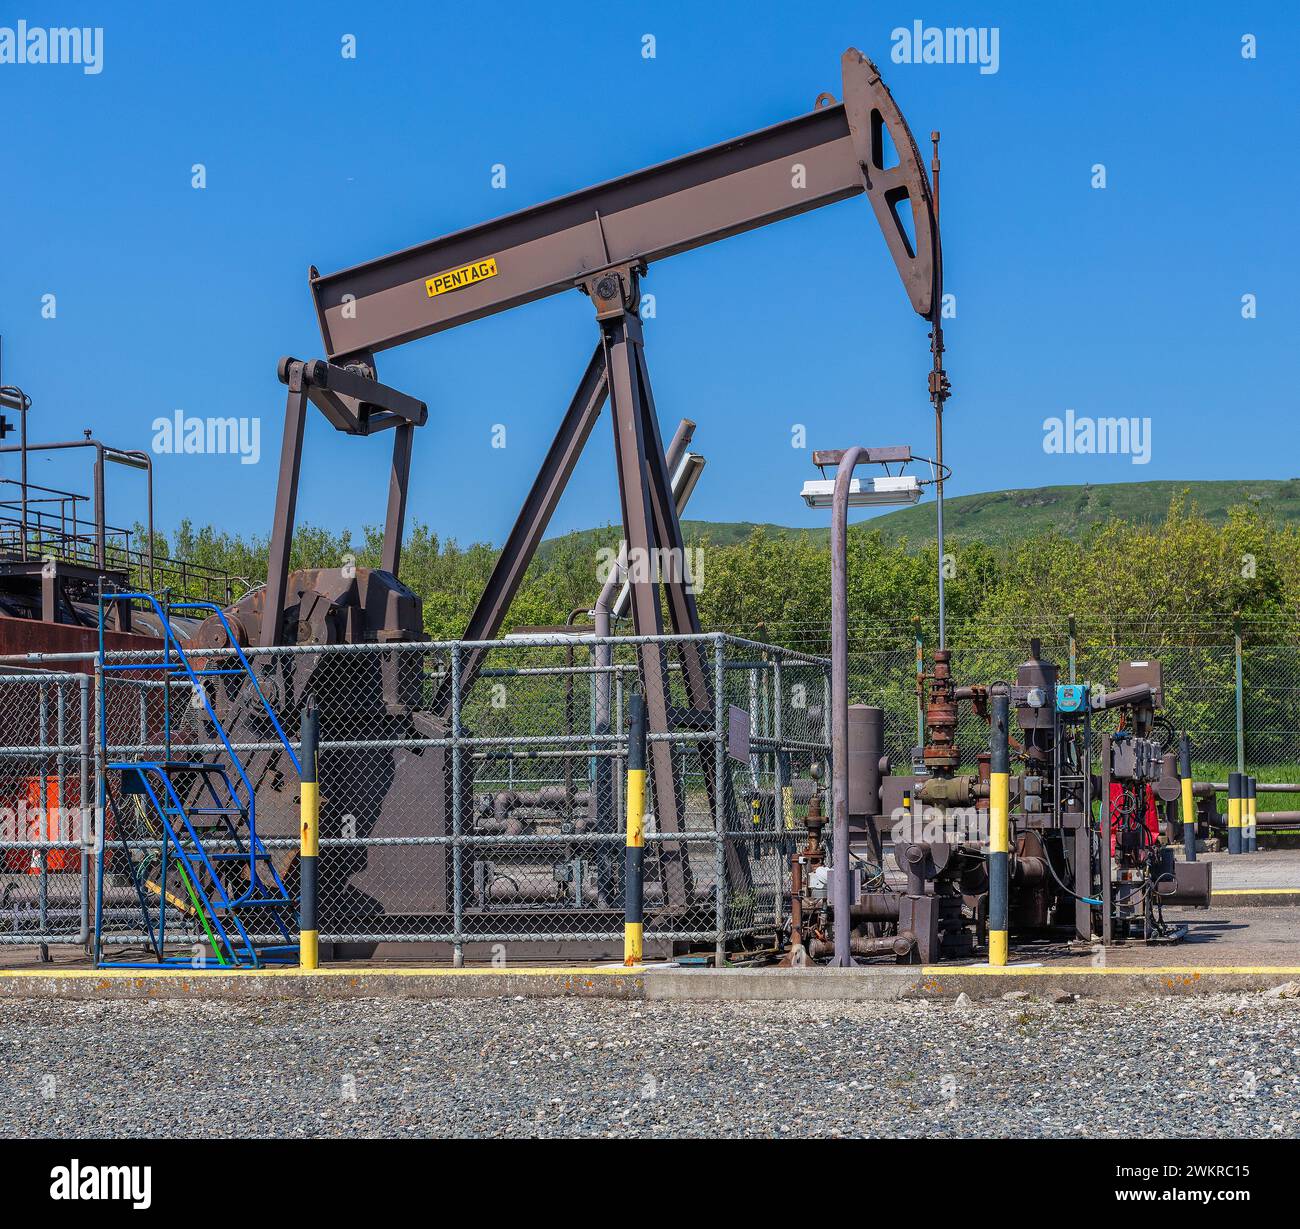 oil well drilling kimmeridge bay dorset england uk Stock Photo